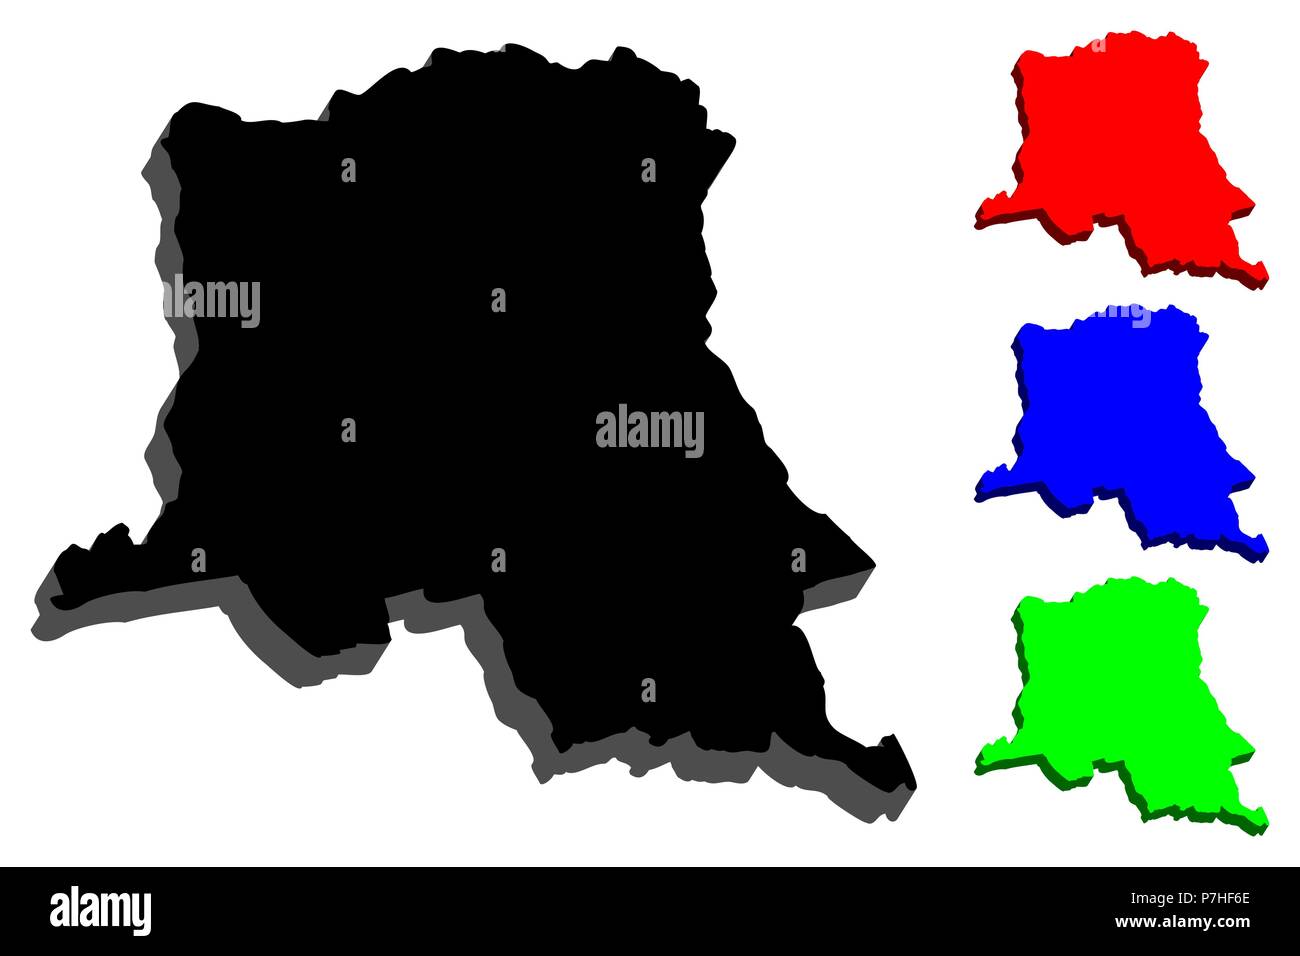 3D de la carte de la République démocratique du Congo (République démocratique du Congo (RDC, Congo-Kinshasa) - noir, rouge, bleu et vert - vector illustration Illustration de Vecteur